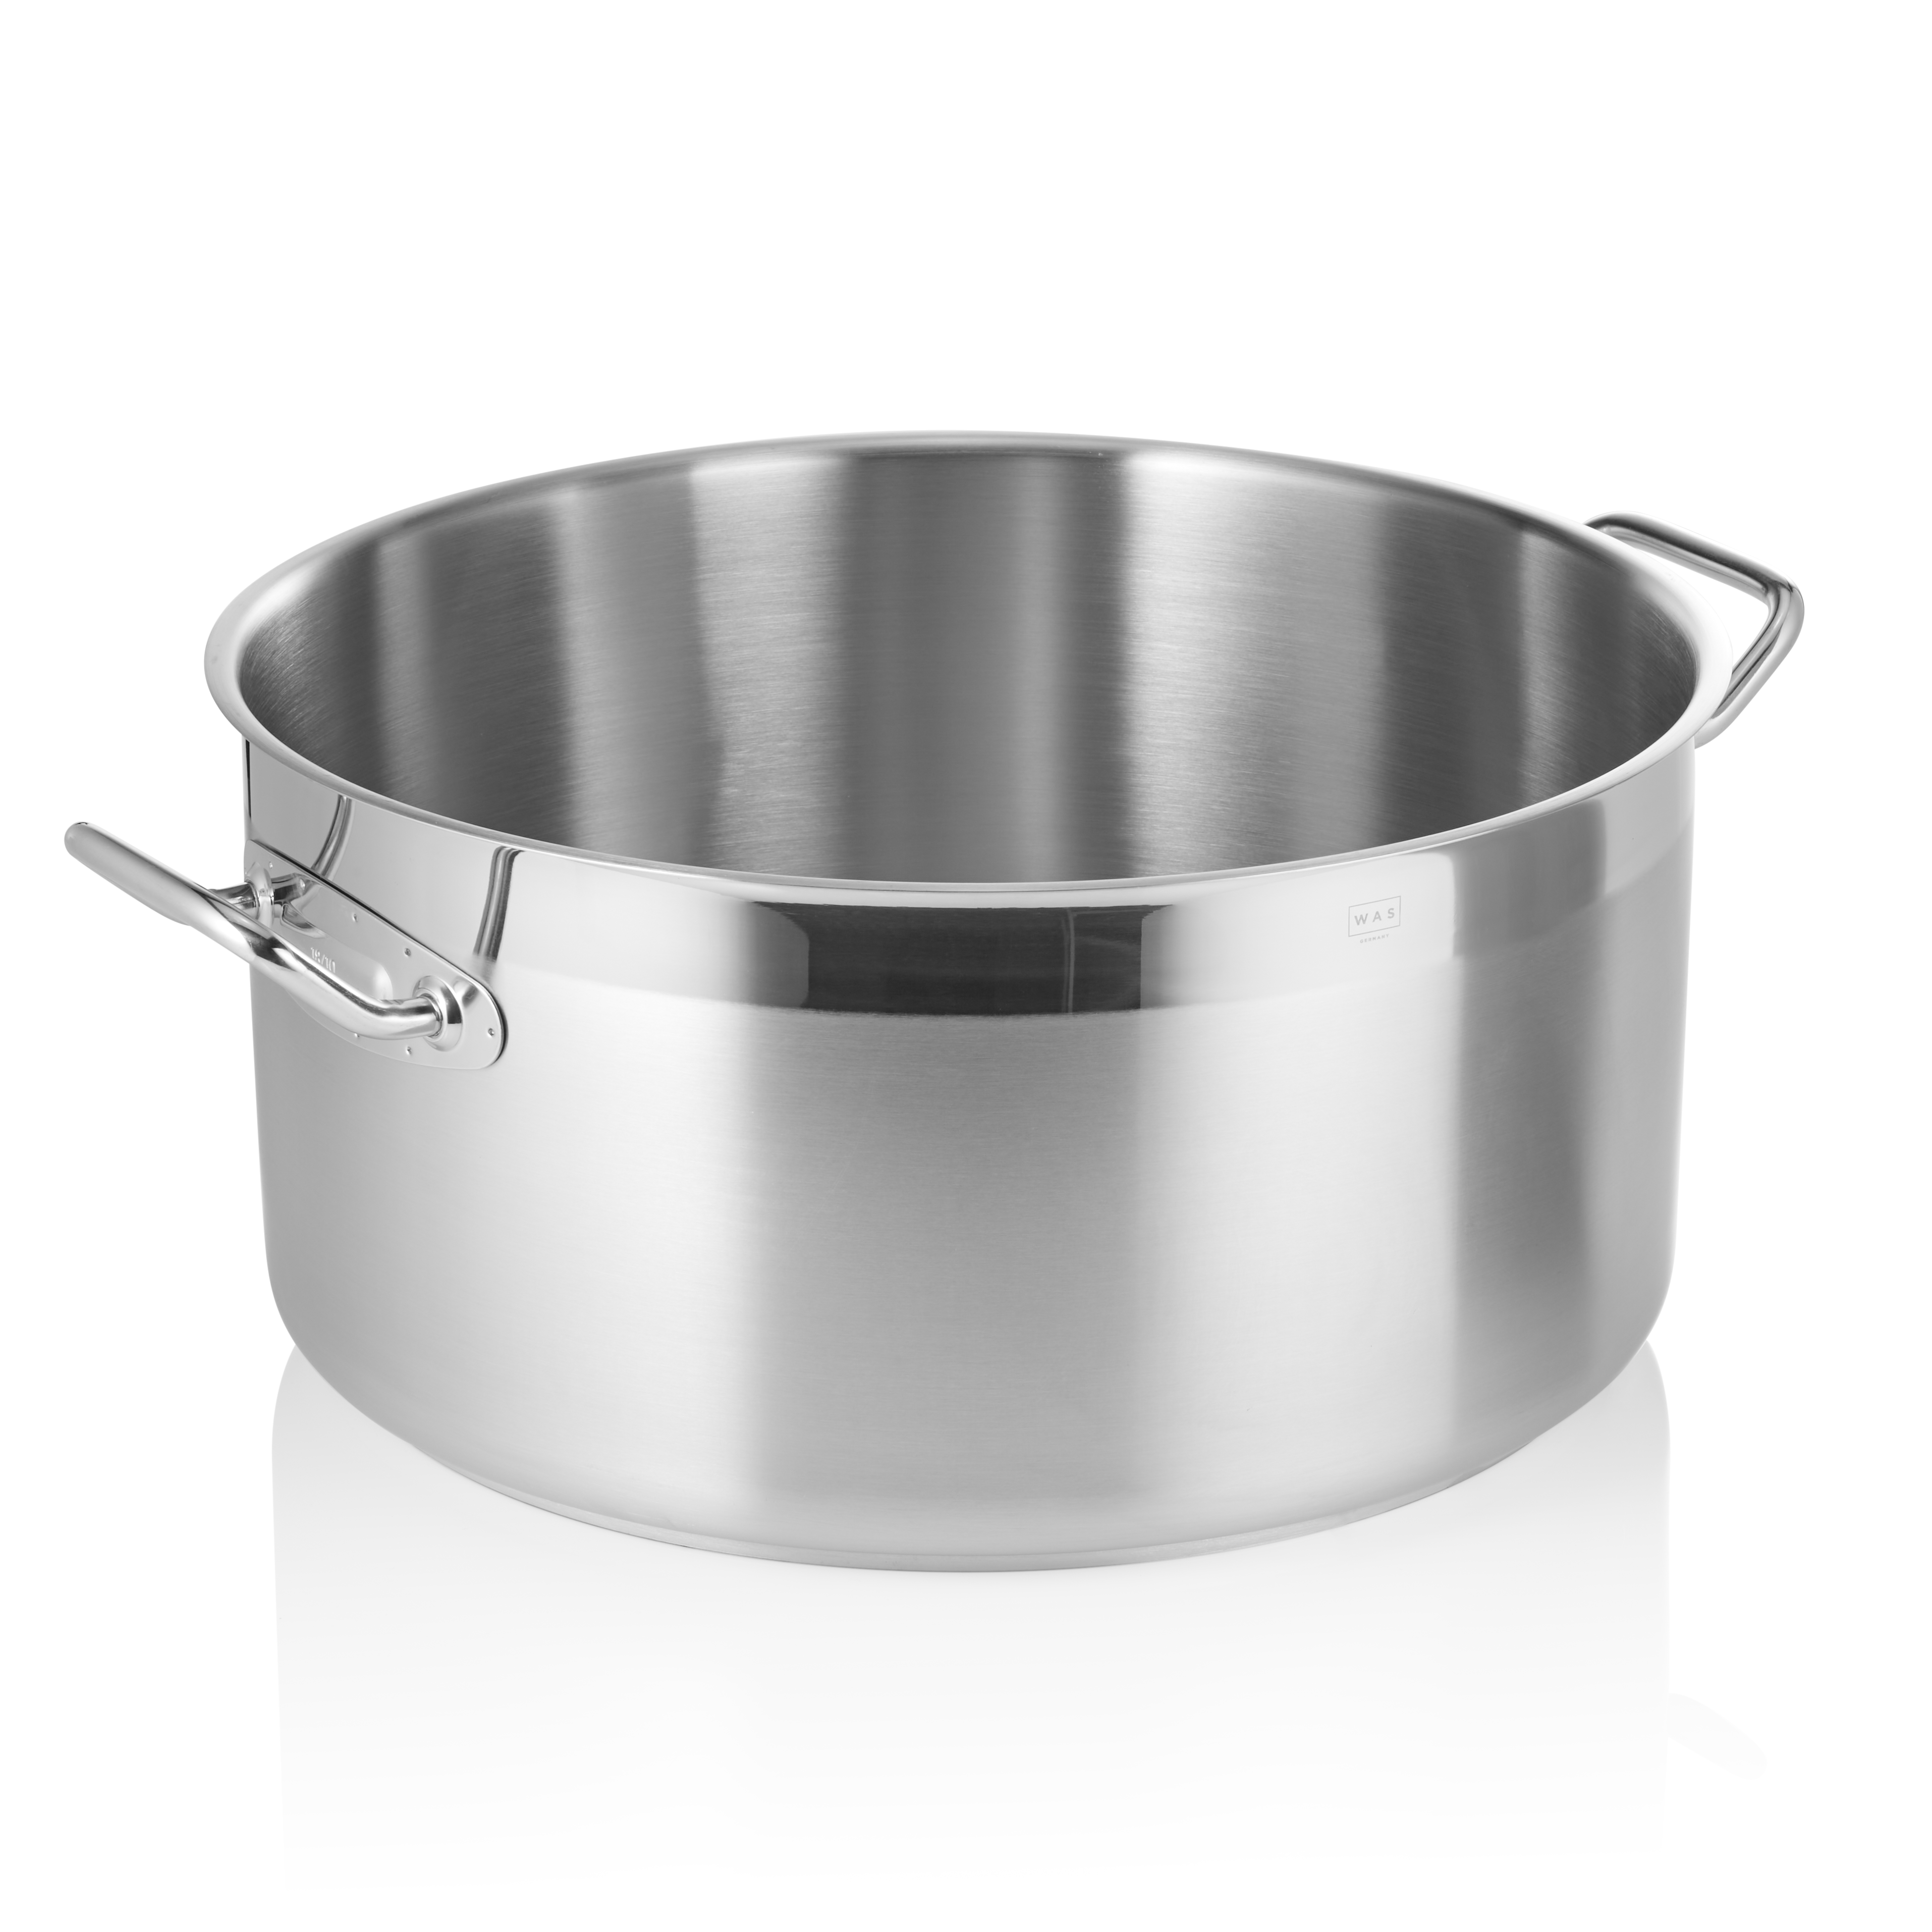 Bratentopf Cookware 21, Ø 45 cm, 35,0 Liter - Höhe 22,5 cm - Edelstahl 18/10